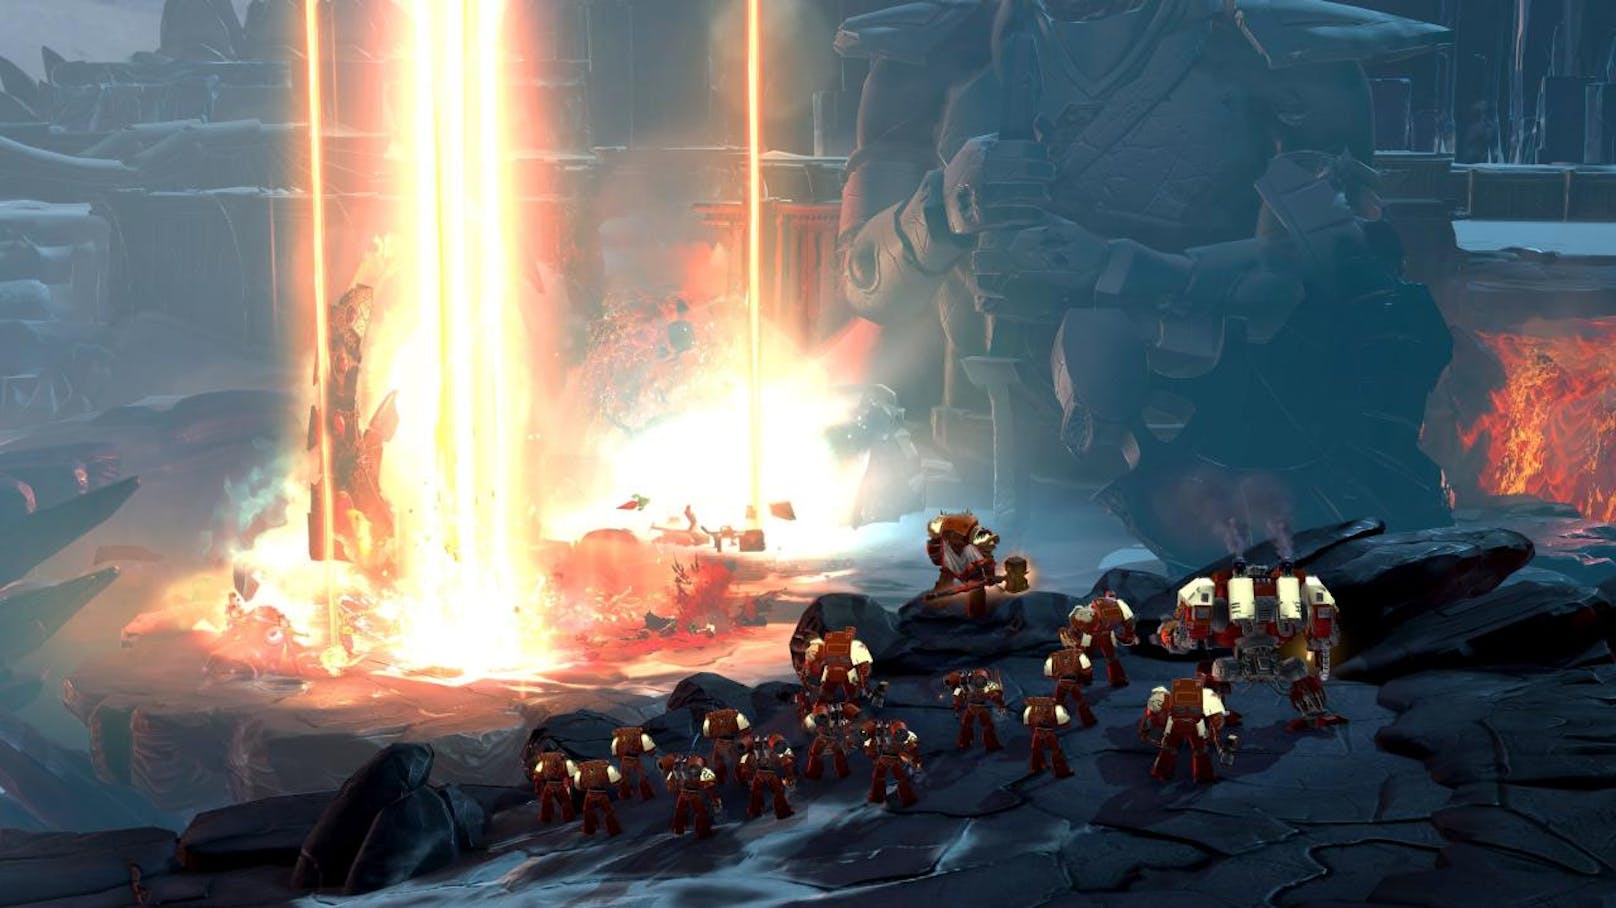 Vom Gameplay her verlässt Dawn of War III den Weg des Vorgängers und bietet wieder wie zu Serienbeginn riesige Schlachten und intensiven Basenbau. Aber keine Sorge: Überfordert sind auch Strategieanfänger nicht, auch wenn sich Profis deutlich leichter tun.